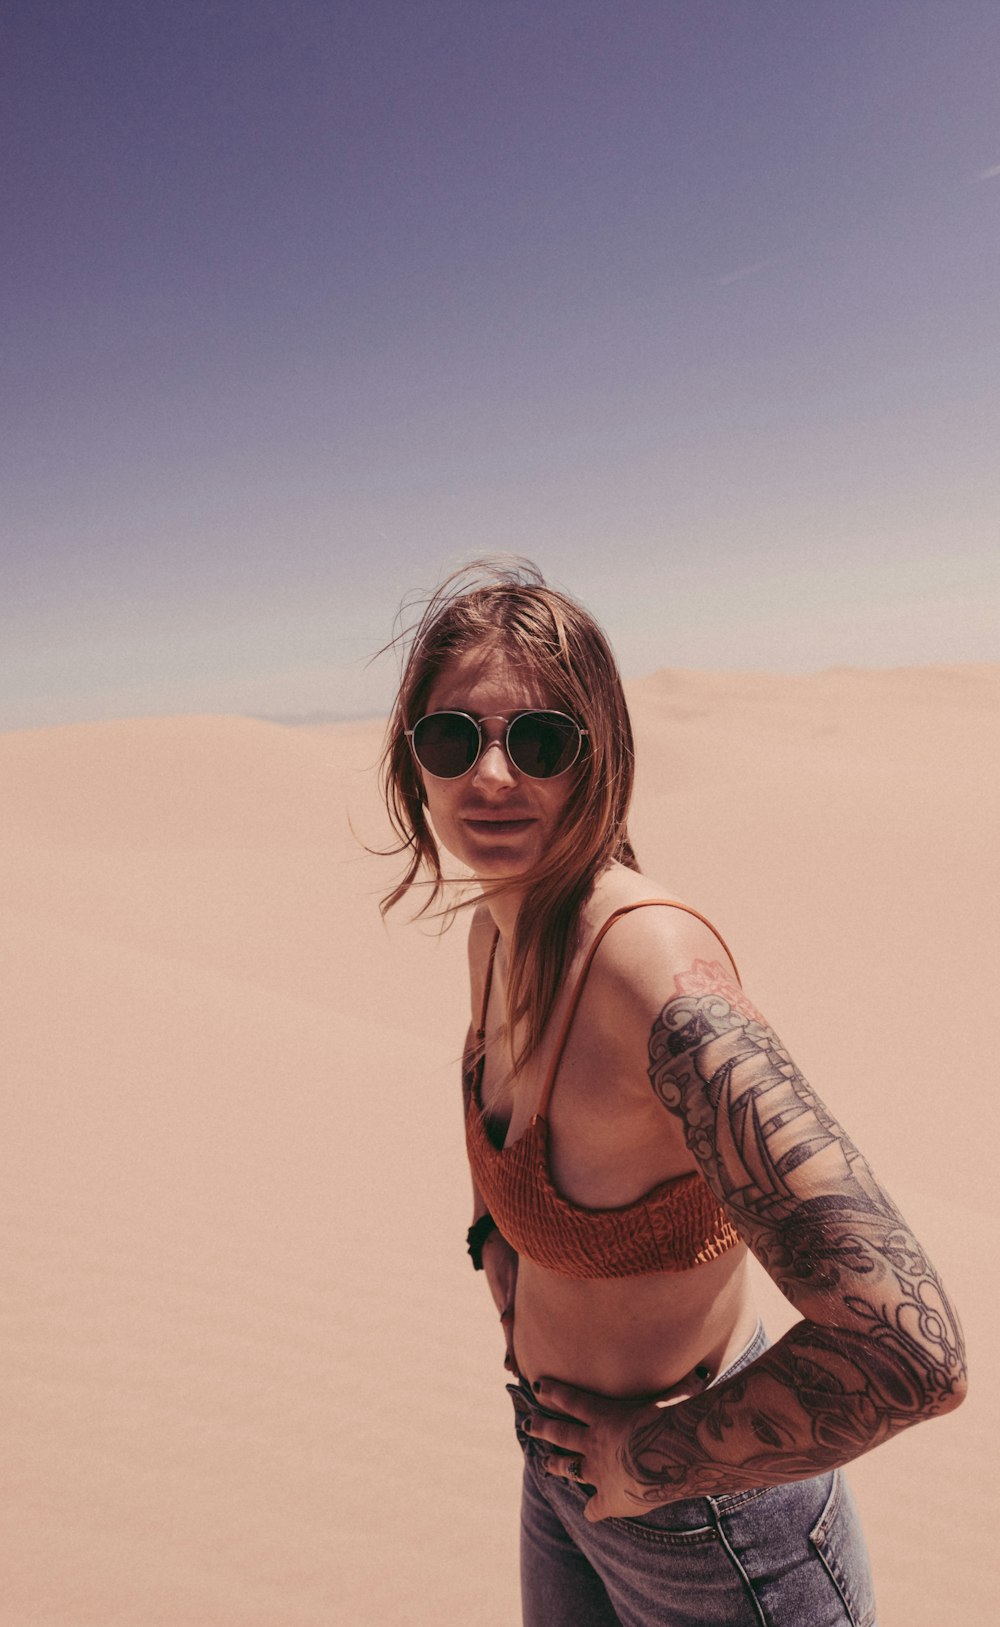 Mujer en sujetador de punto en el desierto